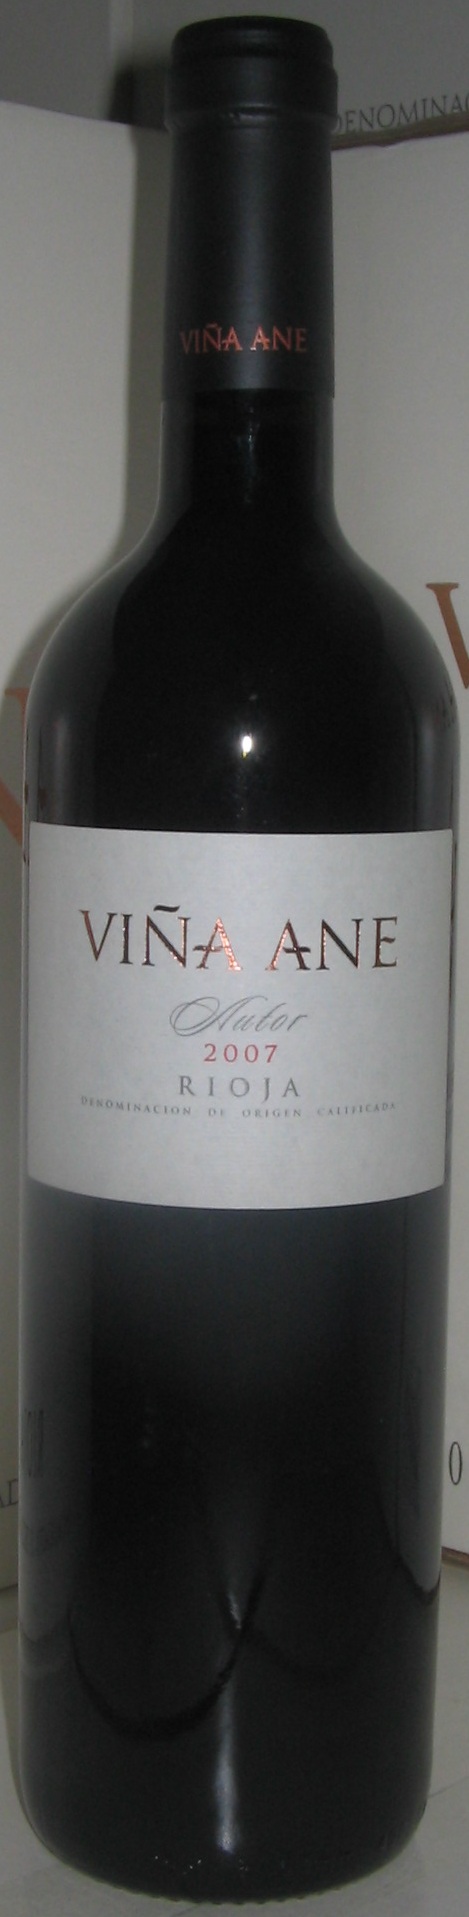 Image of Wine bottle Viña Ane Autor